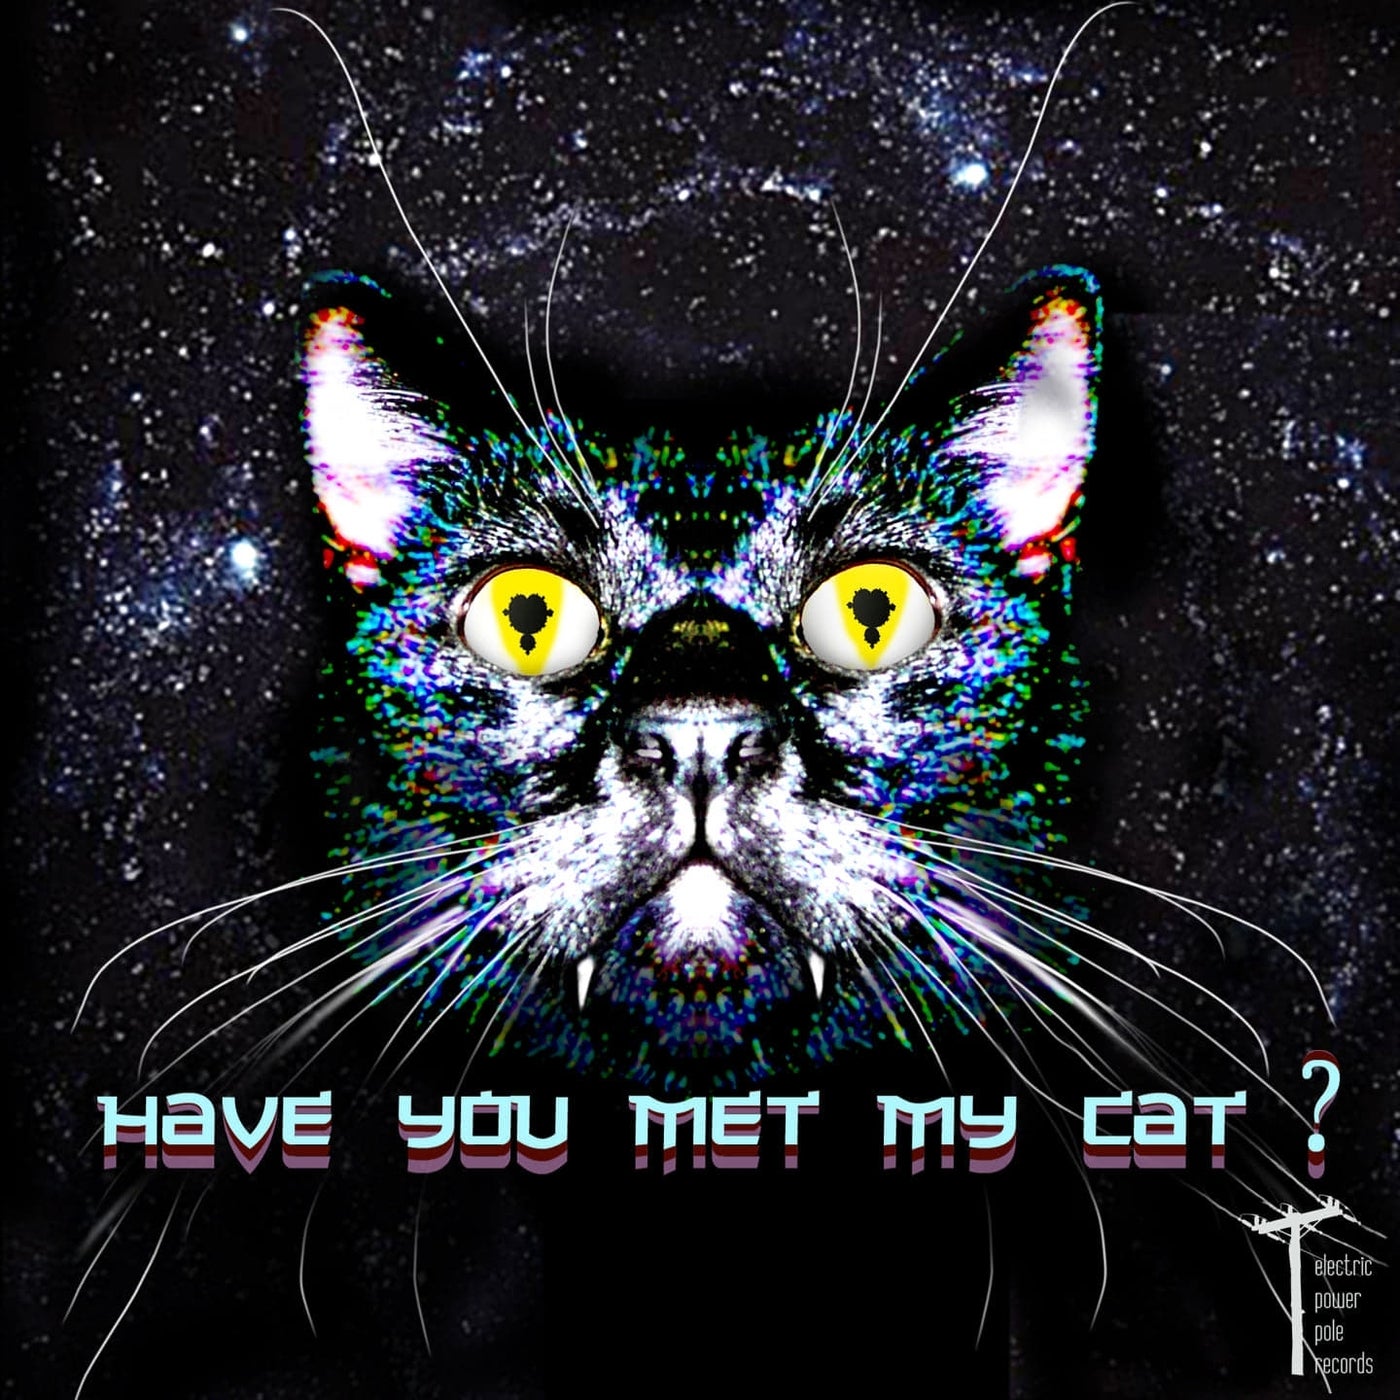 Have you met my cat?